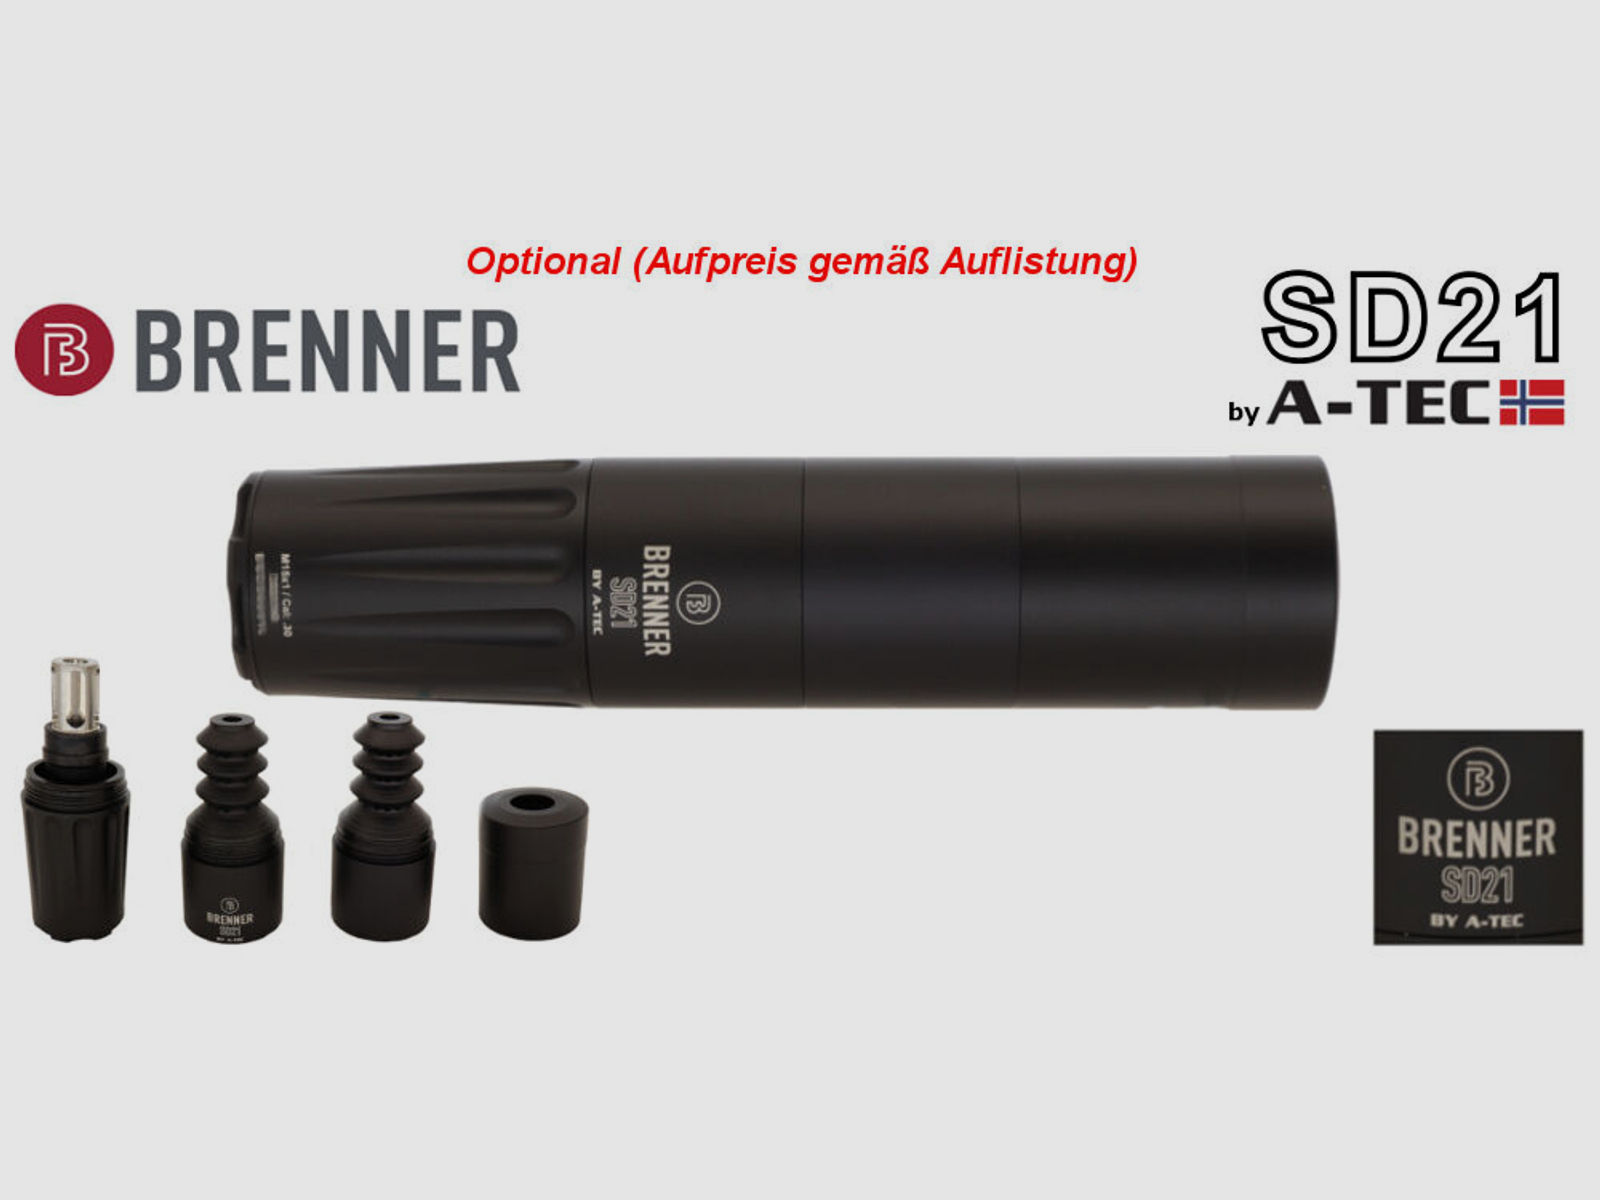 Brenner Komplettpaket:	 Brenner BR20 Lochschaft mit Steiner Ranger 3-12x56  BR-20